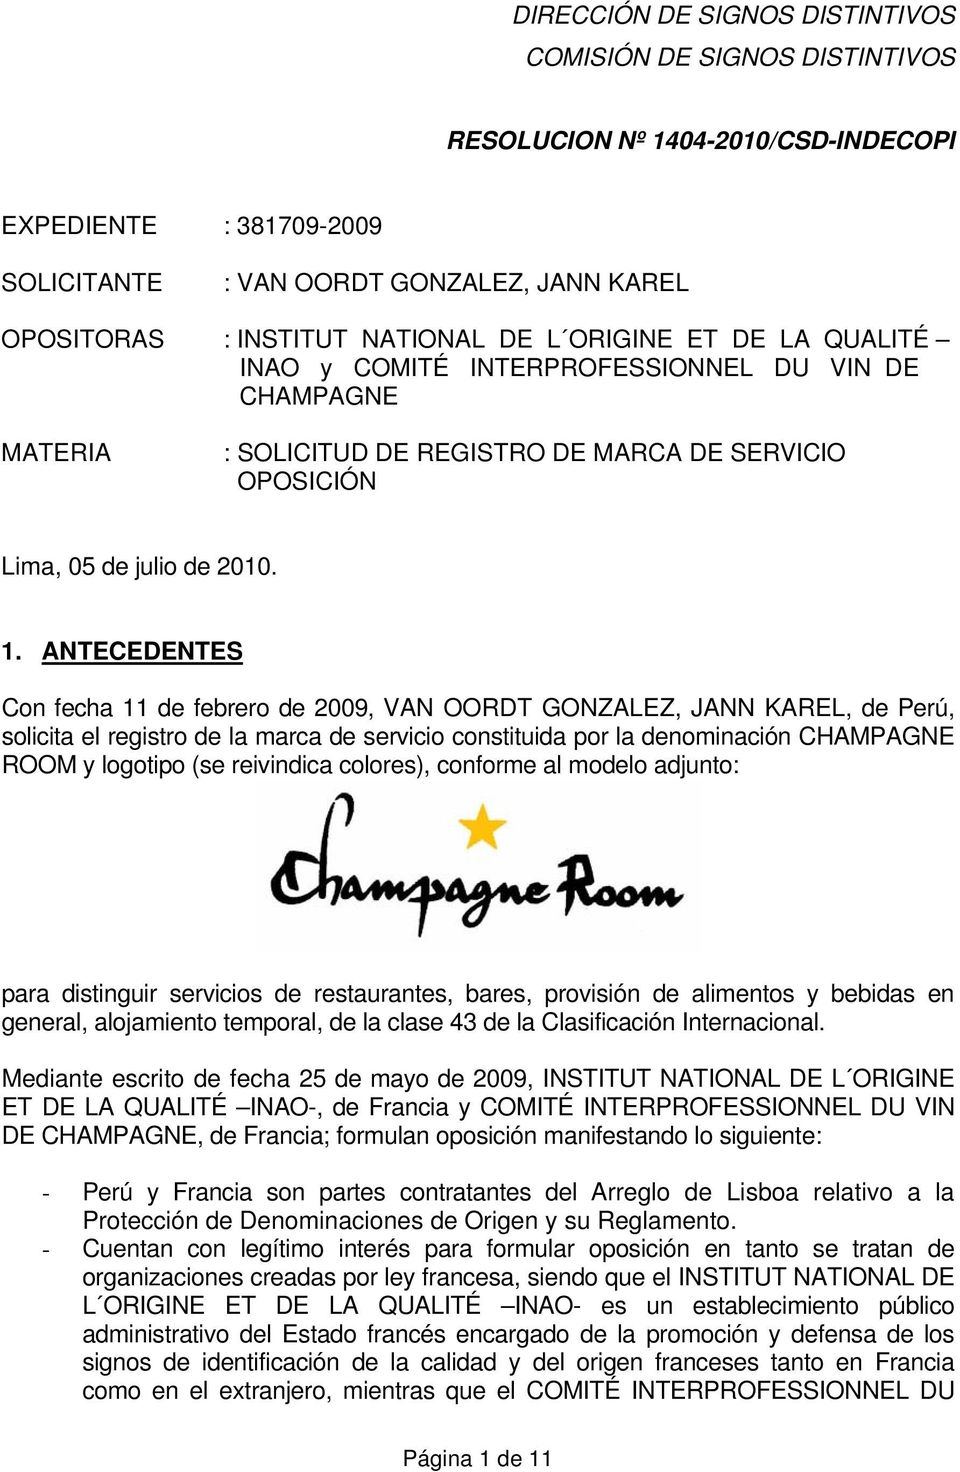 ANTECEDENTES Con fecha 11 de febrero de 2009, VAN OORDT GONZALEZ, JANN KAREL, de Perú, solicita el registro de la marca de servicio constituida por la denominación CHAMPAGNE ROOM y logotipo (se